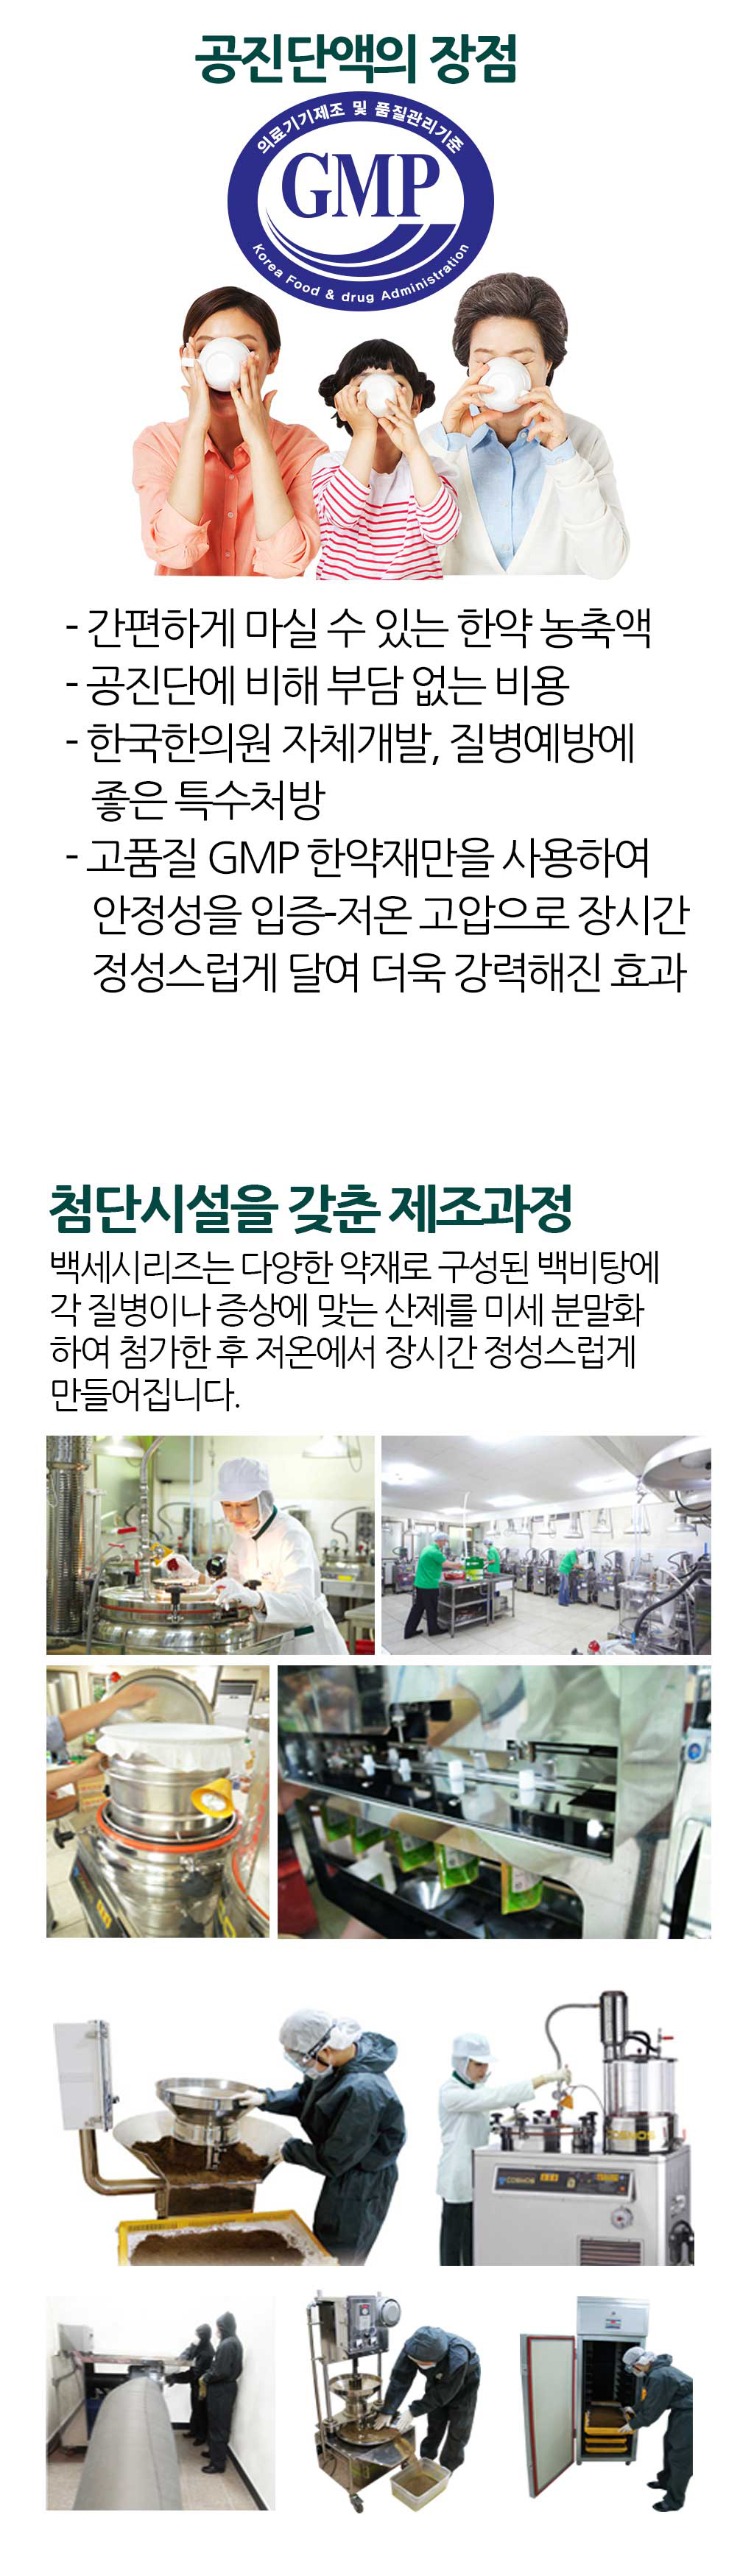 한국한의원, 부산한의원추천, 공진단, 부산공진단, 공진단농축액